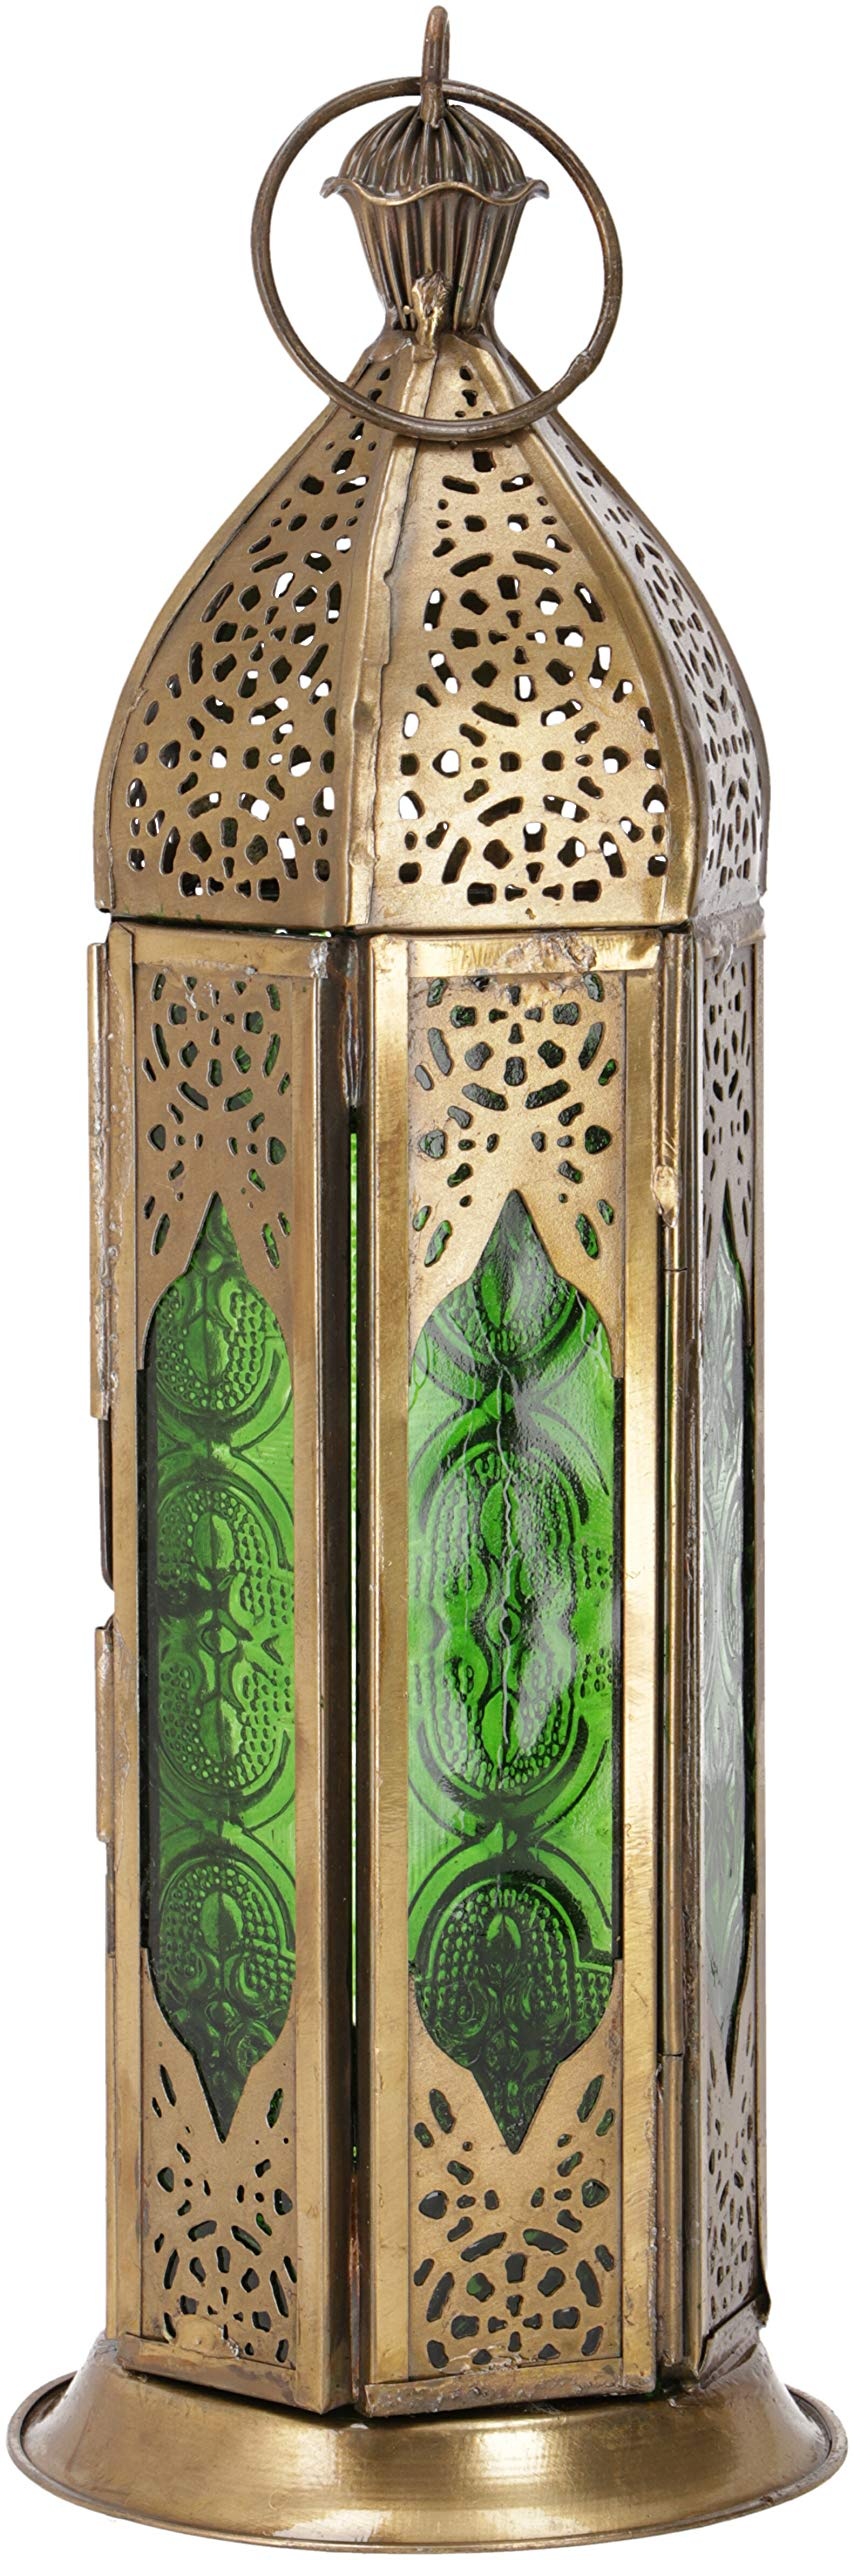 GURU SHOP Orientalische Metall/Glas Laterne in Marrokanischem Design, Windlicht, Grün, Farbe: Grün, 23x8x8 cm, Orientalische Laternen